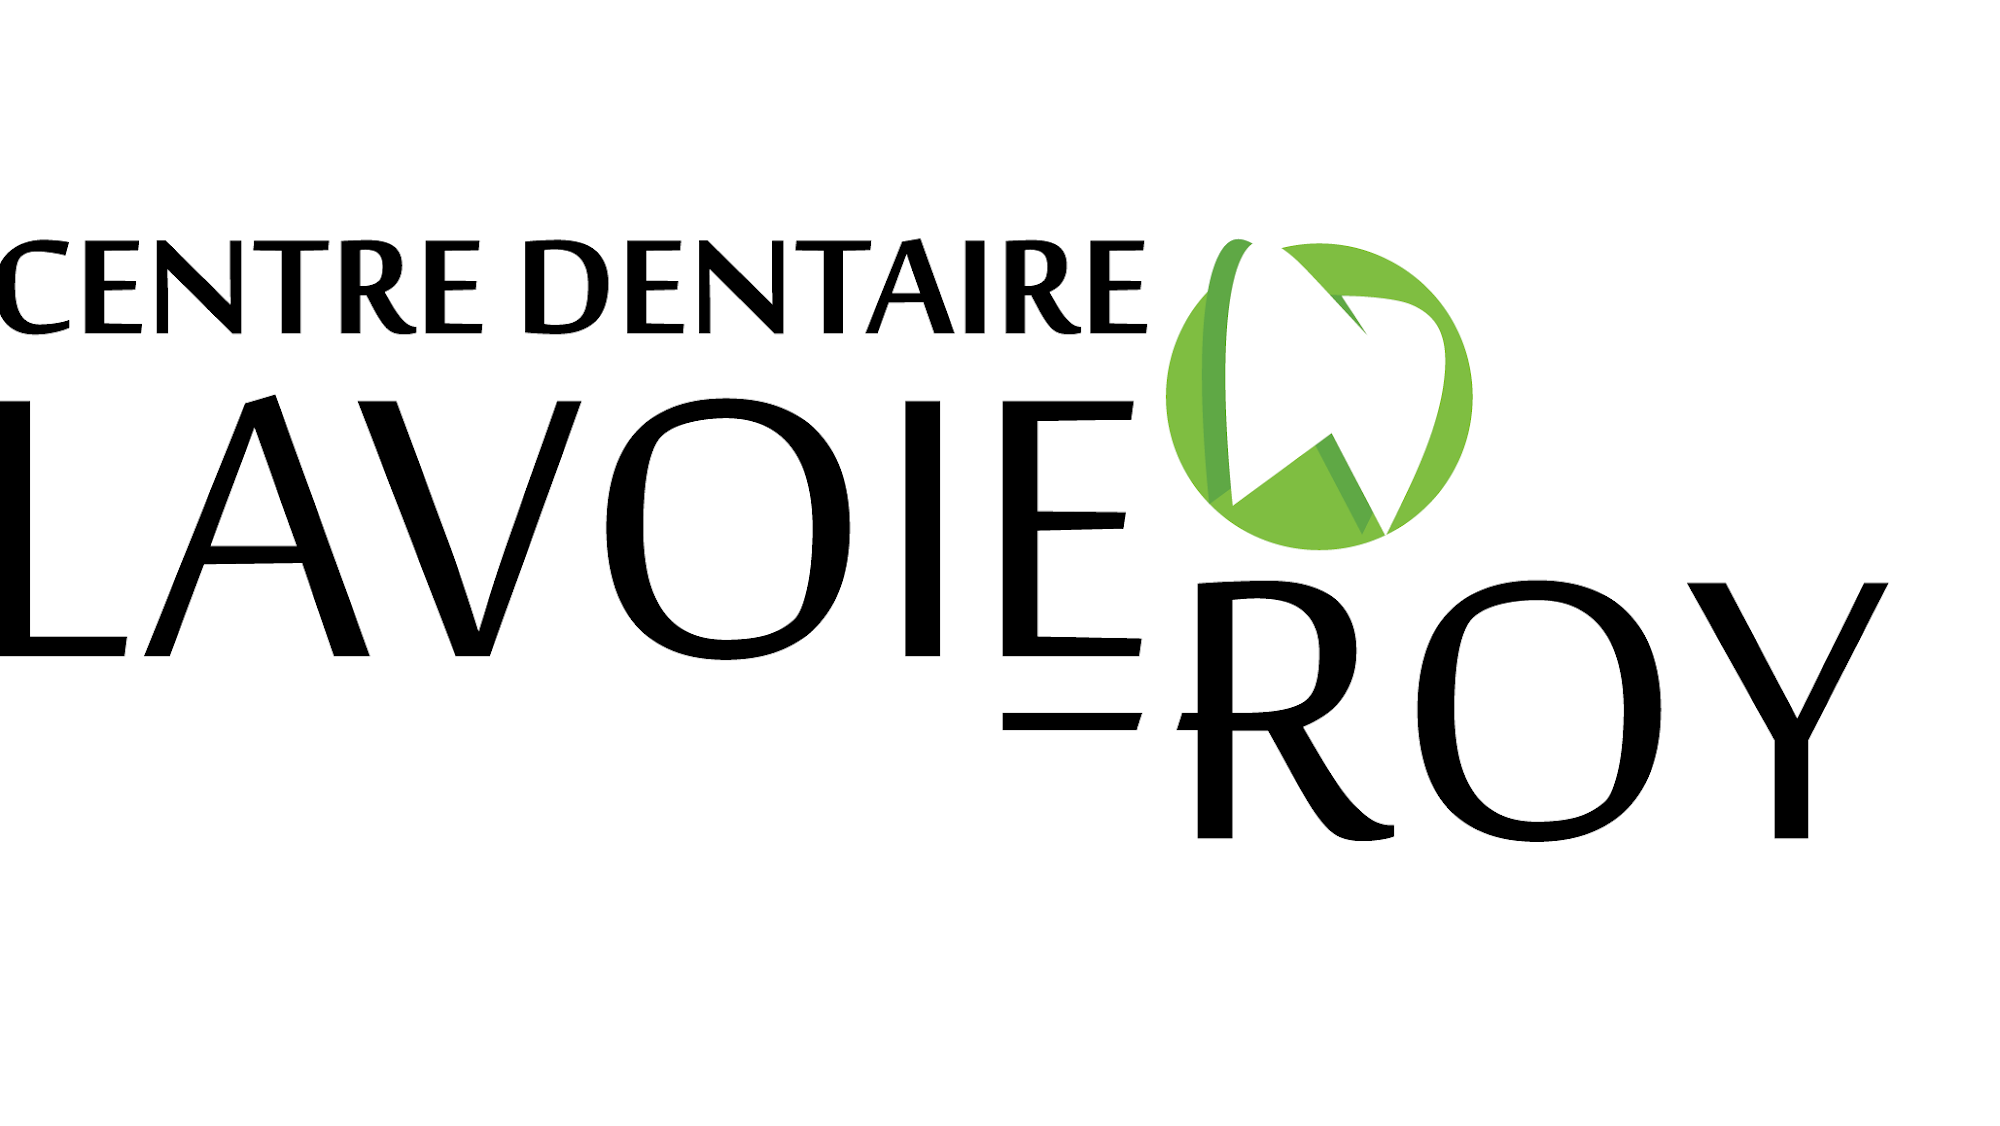 Centre Dentaire Lavoie-Roy 10974 Bd Sainte-Anne #104, Beaupré Quebec G0A 1E0